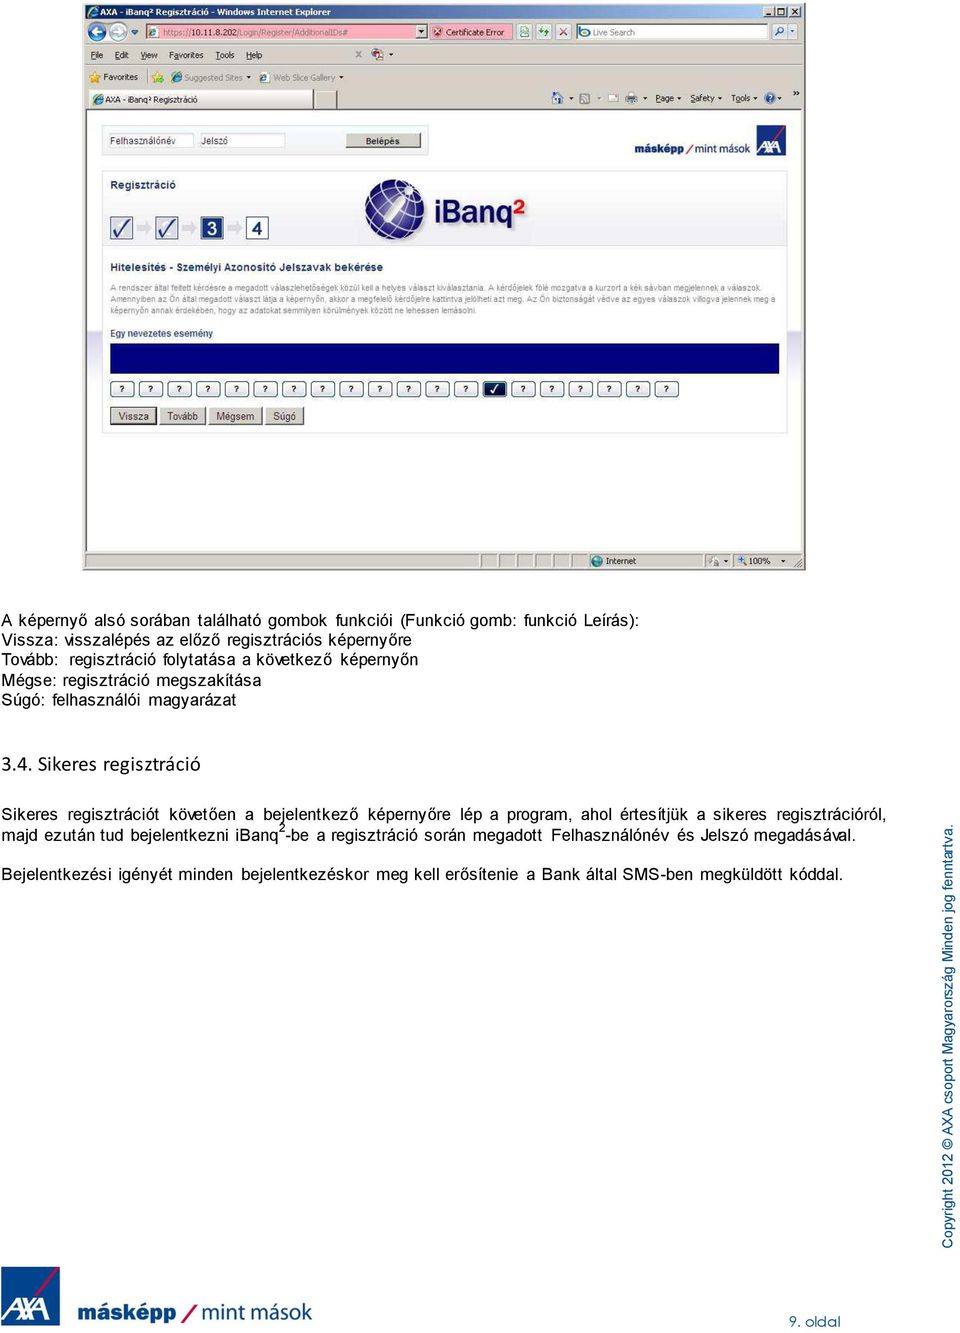 folytatása a következő képernyőn Mégse: regisztráció megszakítása Súgó: felhasználói magyarázat 3.4.